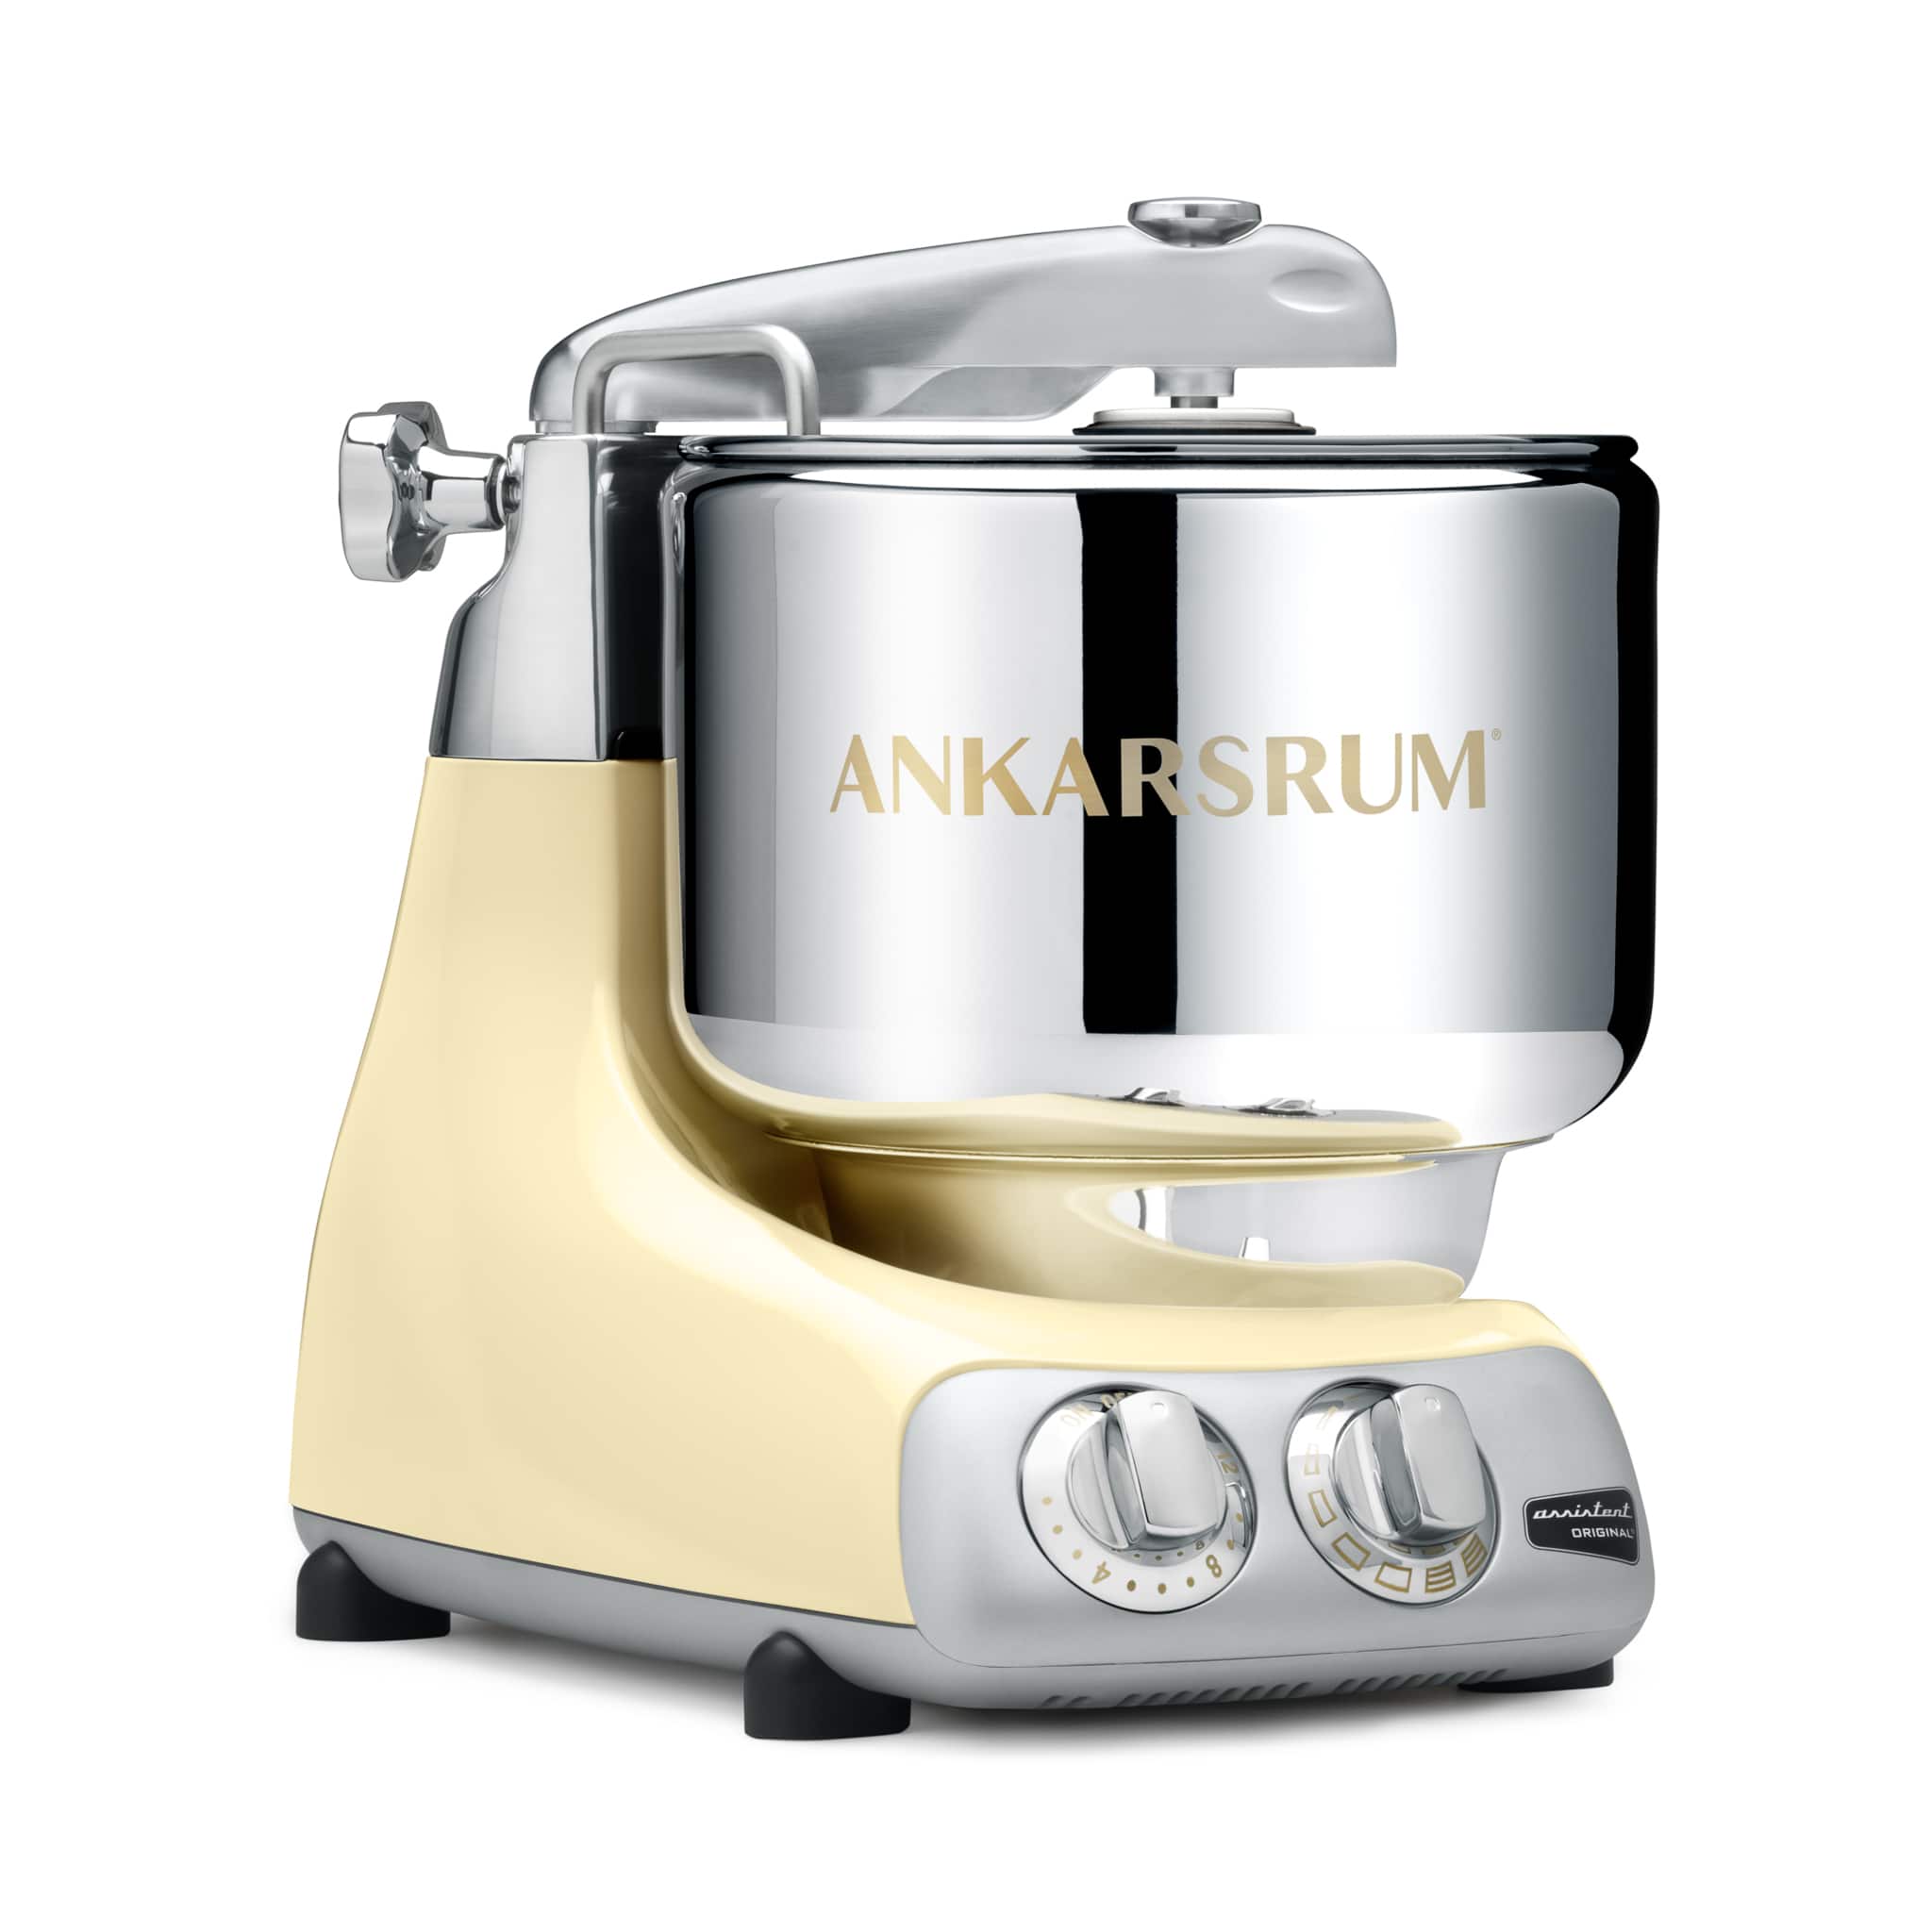 Ankarsrum Assistent Original Stand Mixer, Cream